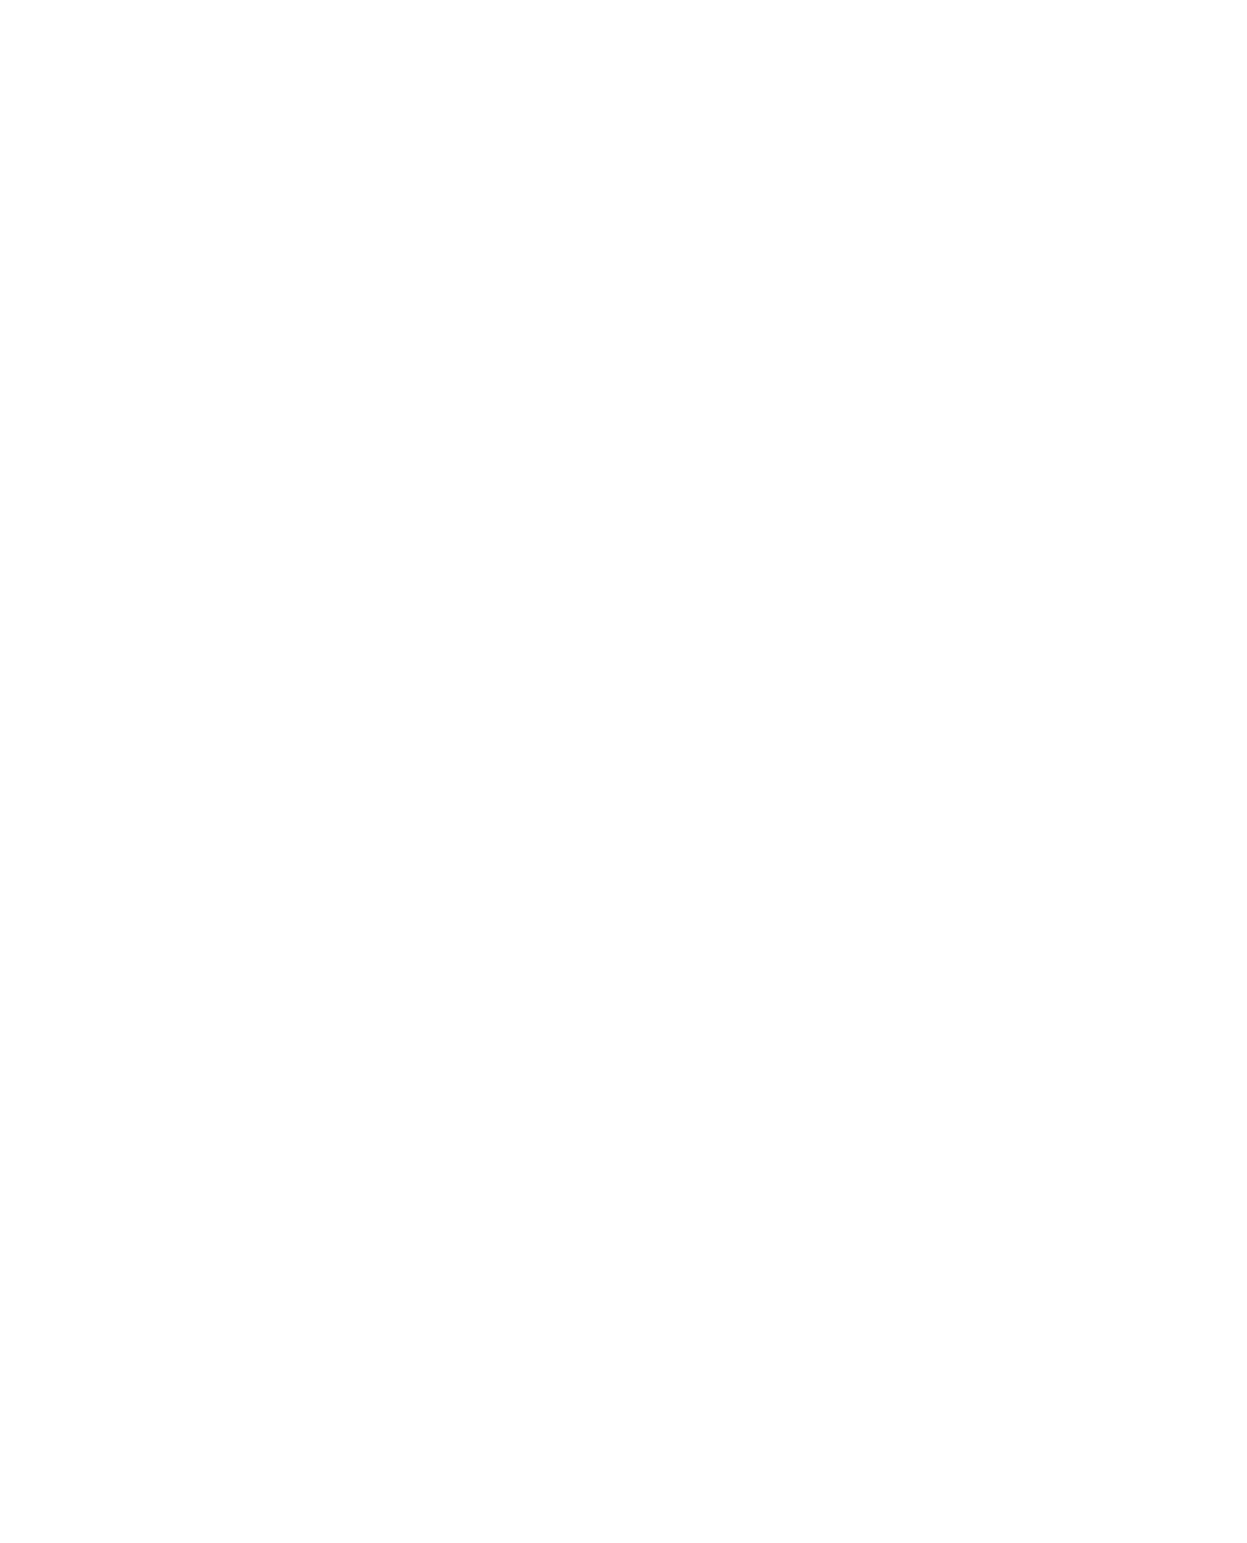 Hexagon Logo Letter Letter Sse Logo Stock Vector (Royalty Free) 786567352 |  Shutterstock